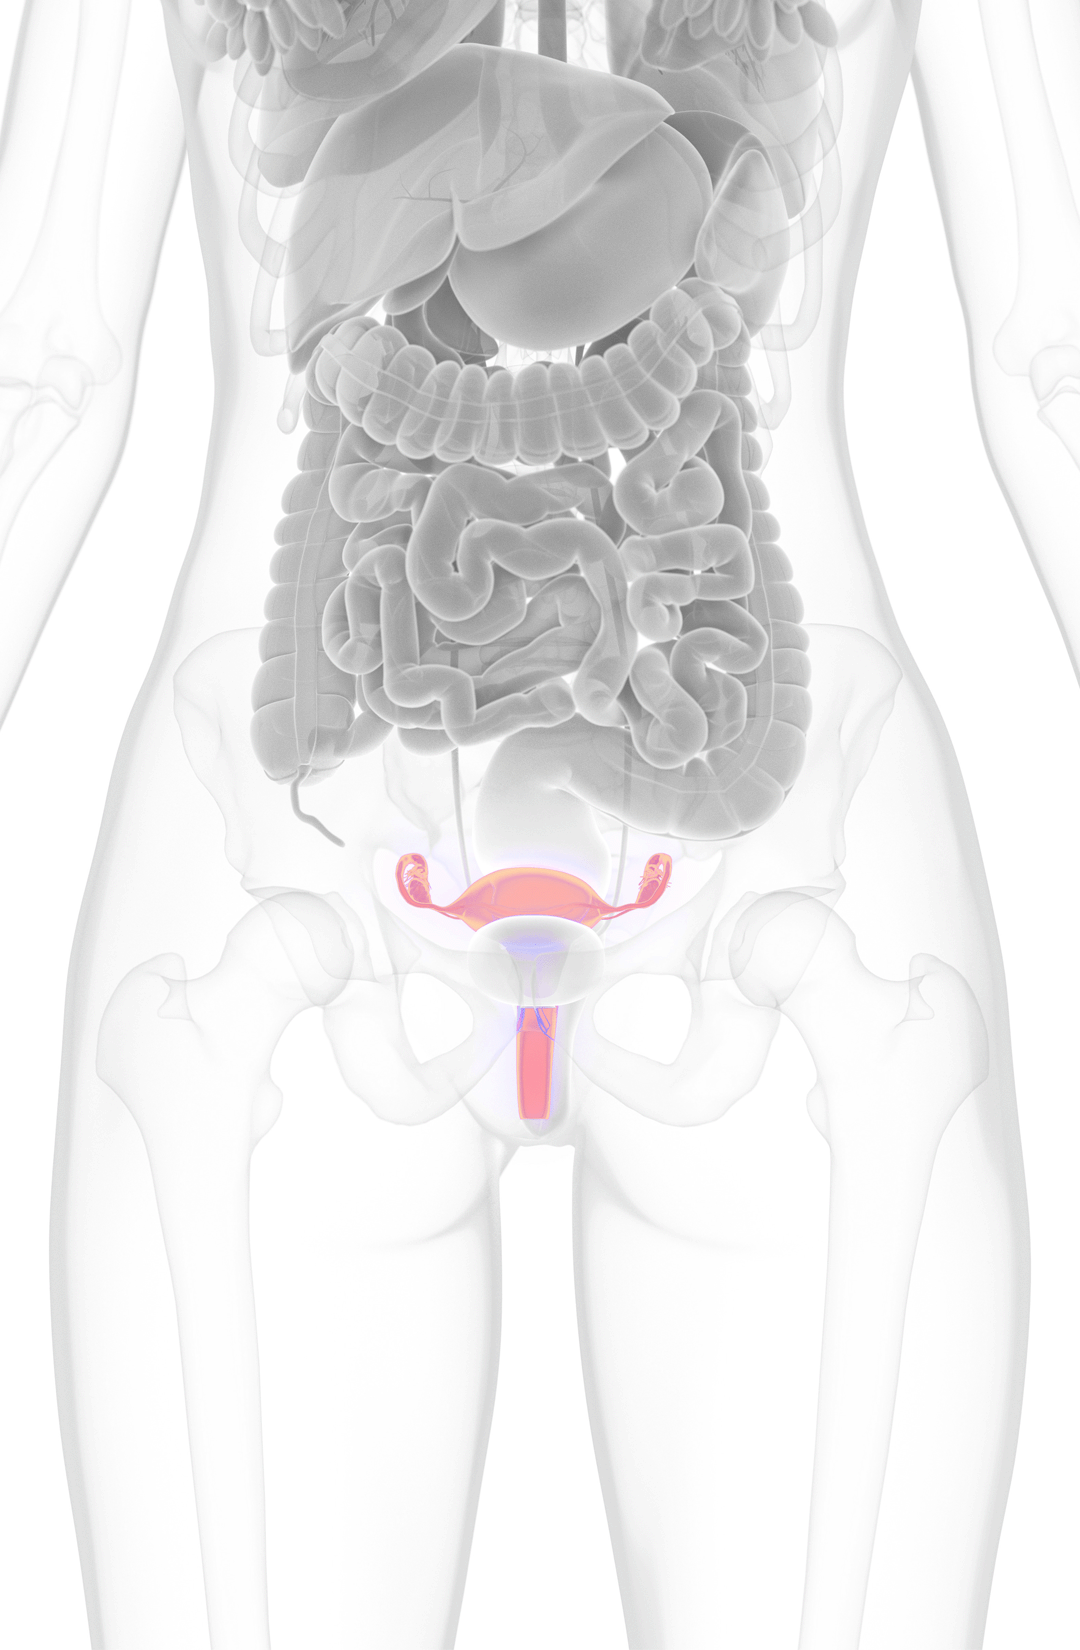 Imagen del útero en una ilustración